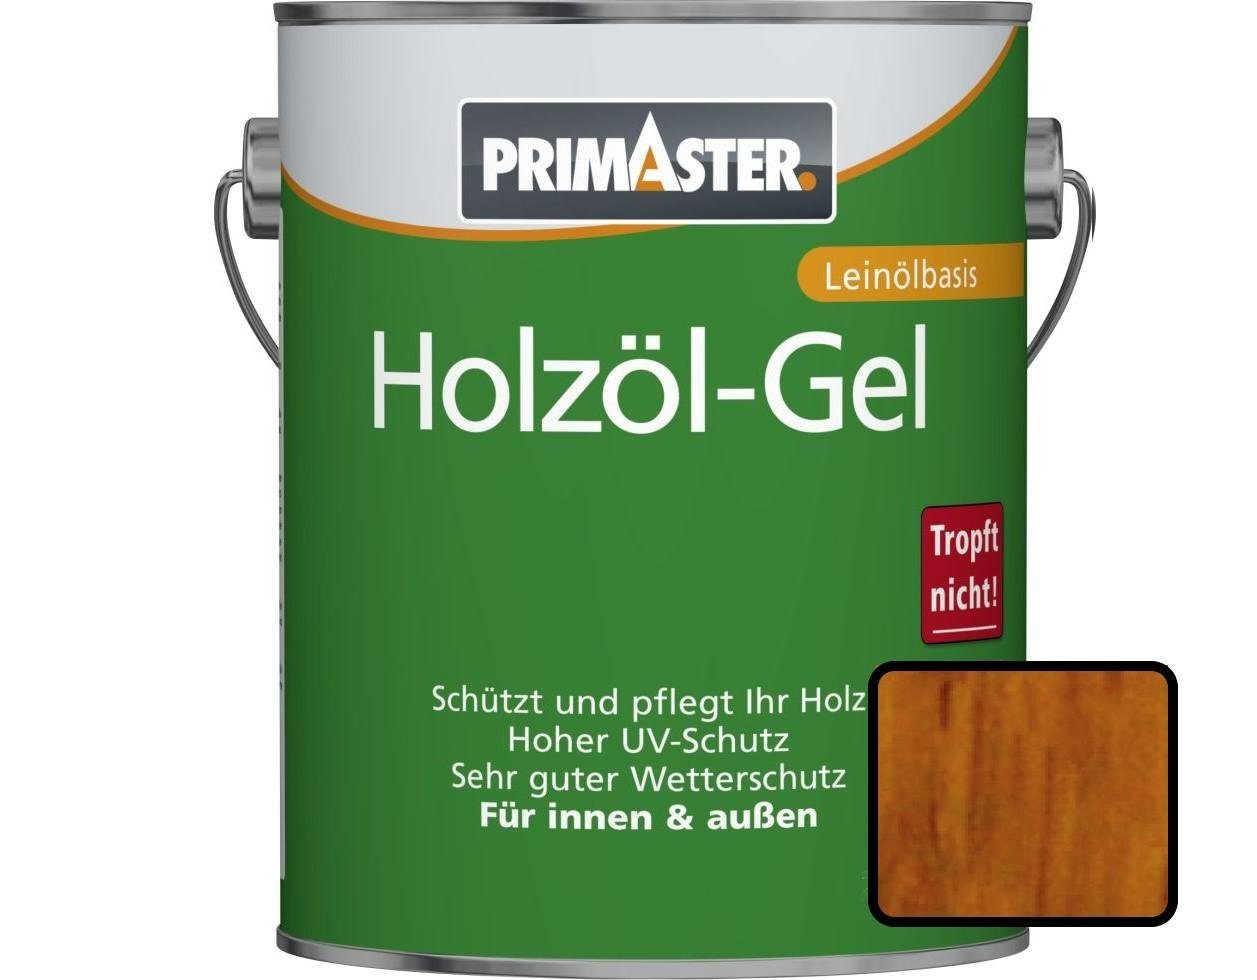 Primaster Hartholzöl Primaster Holzöl-Gel 750 ml eiche